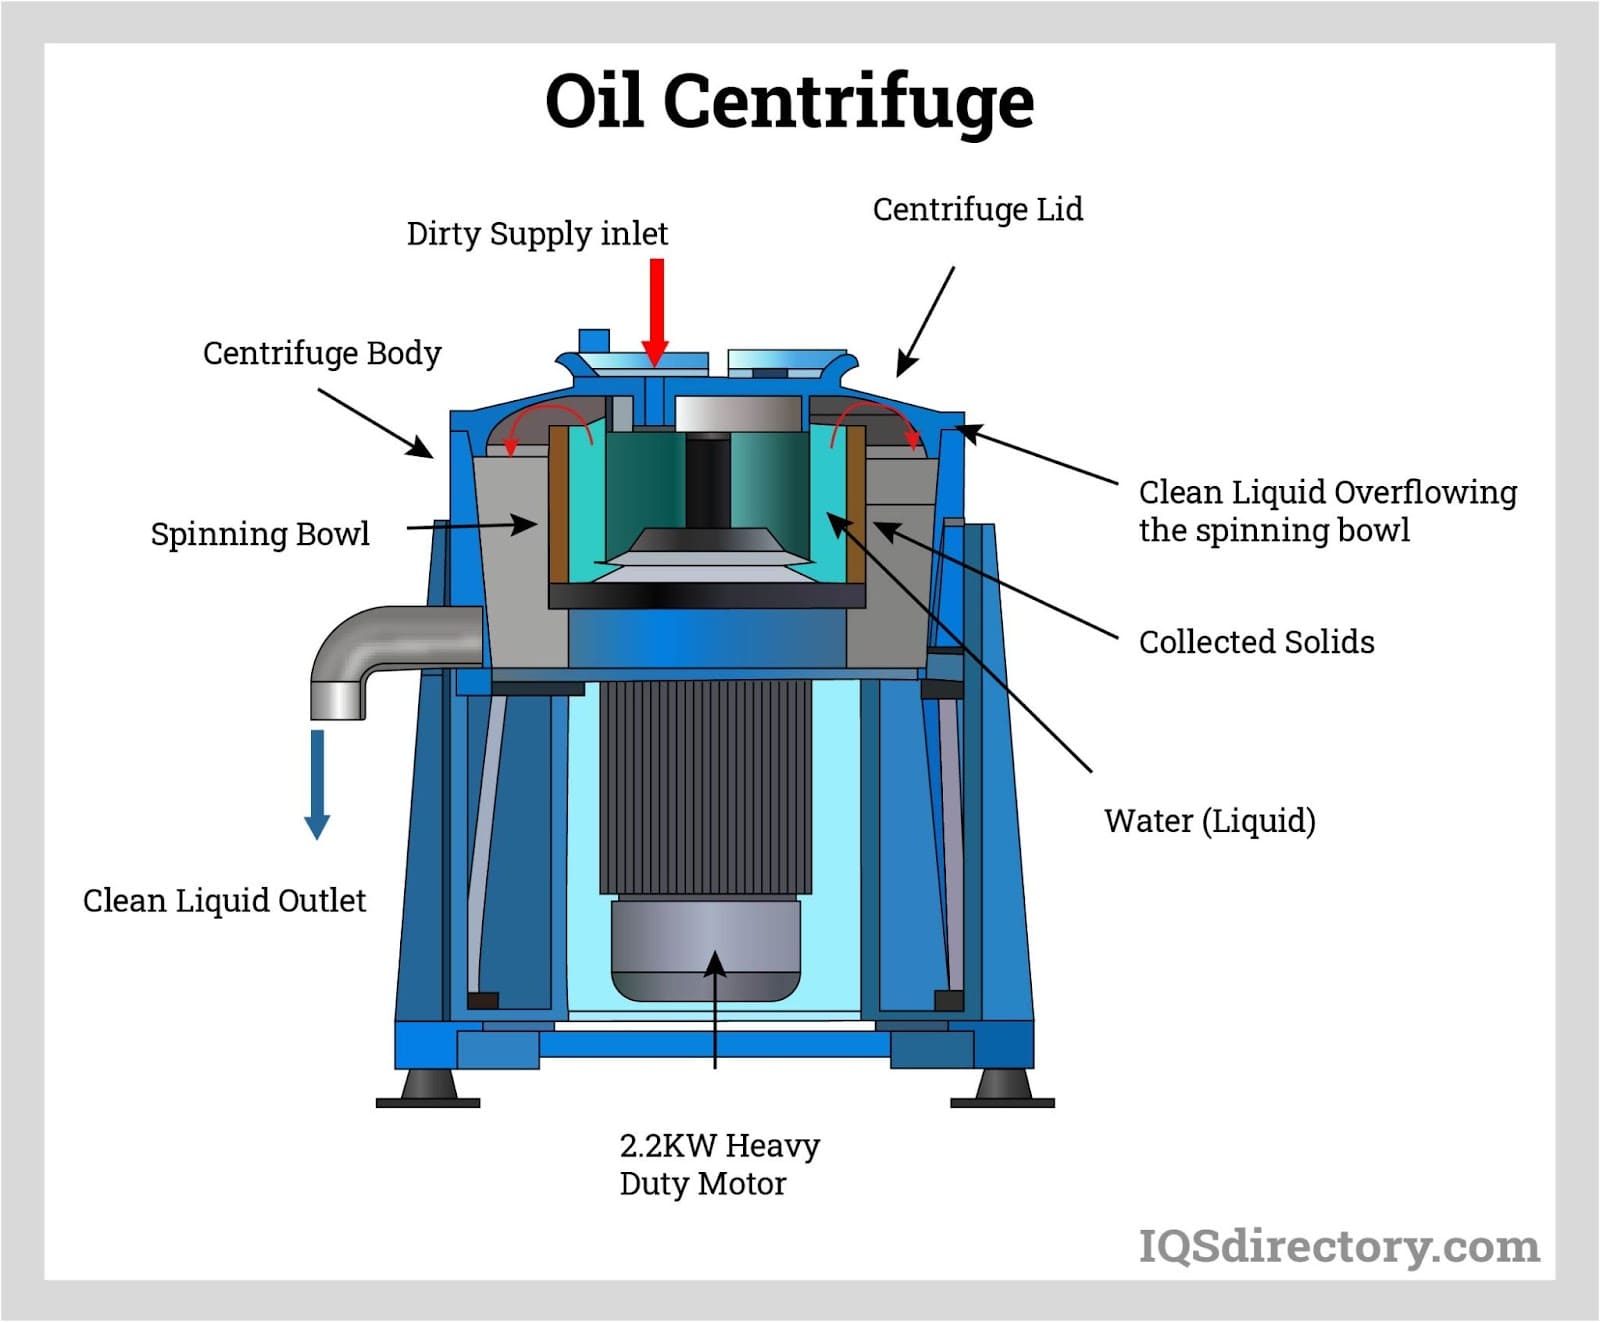 Oil Centrifuge